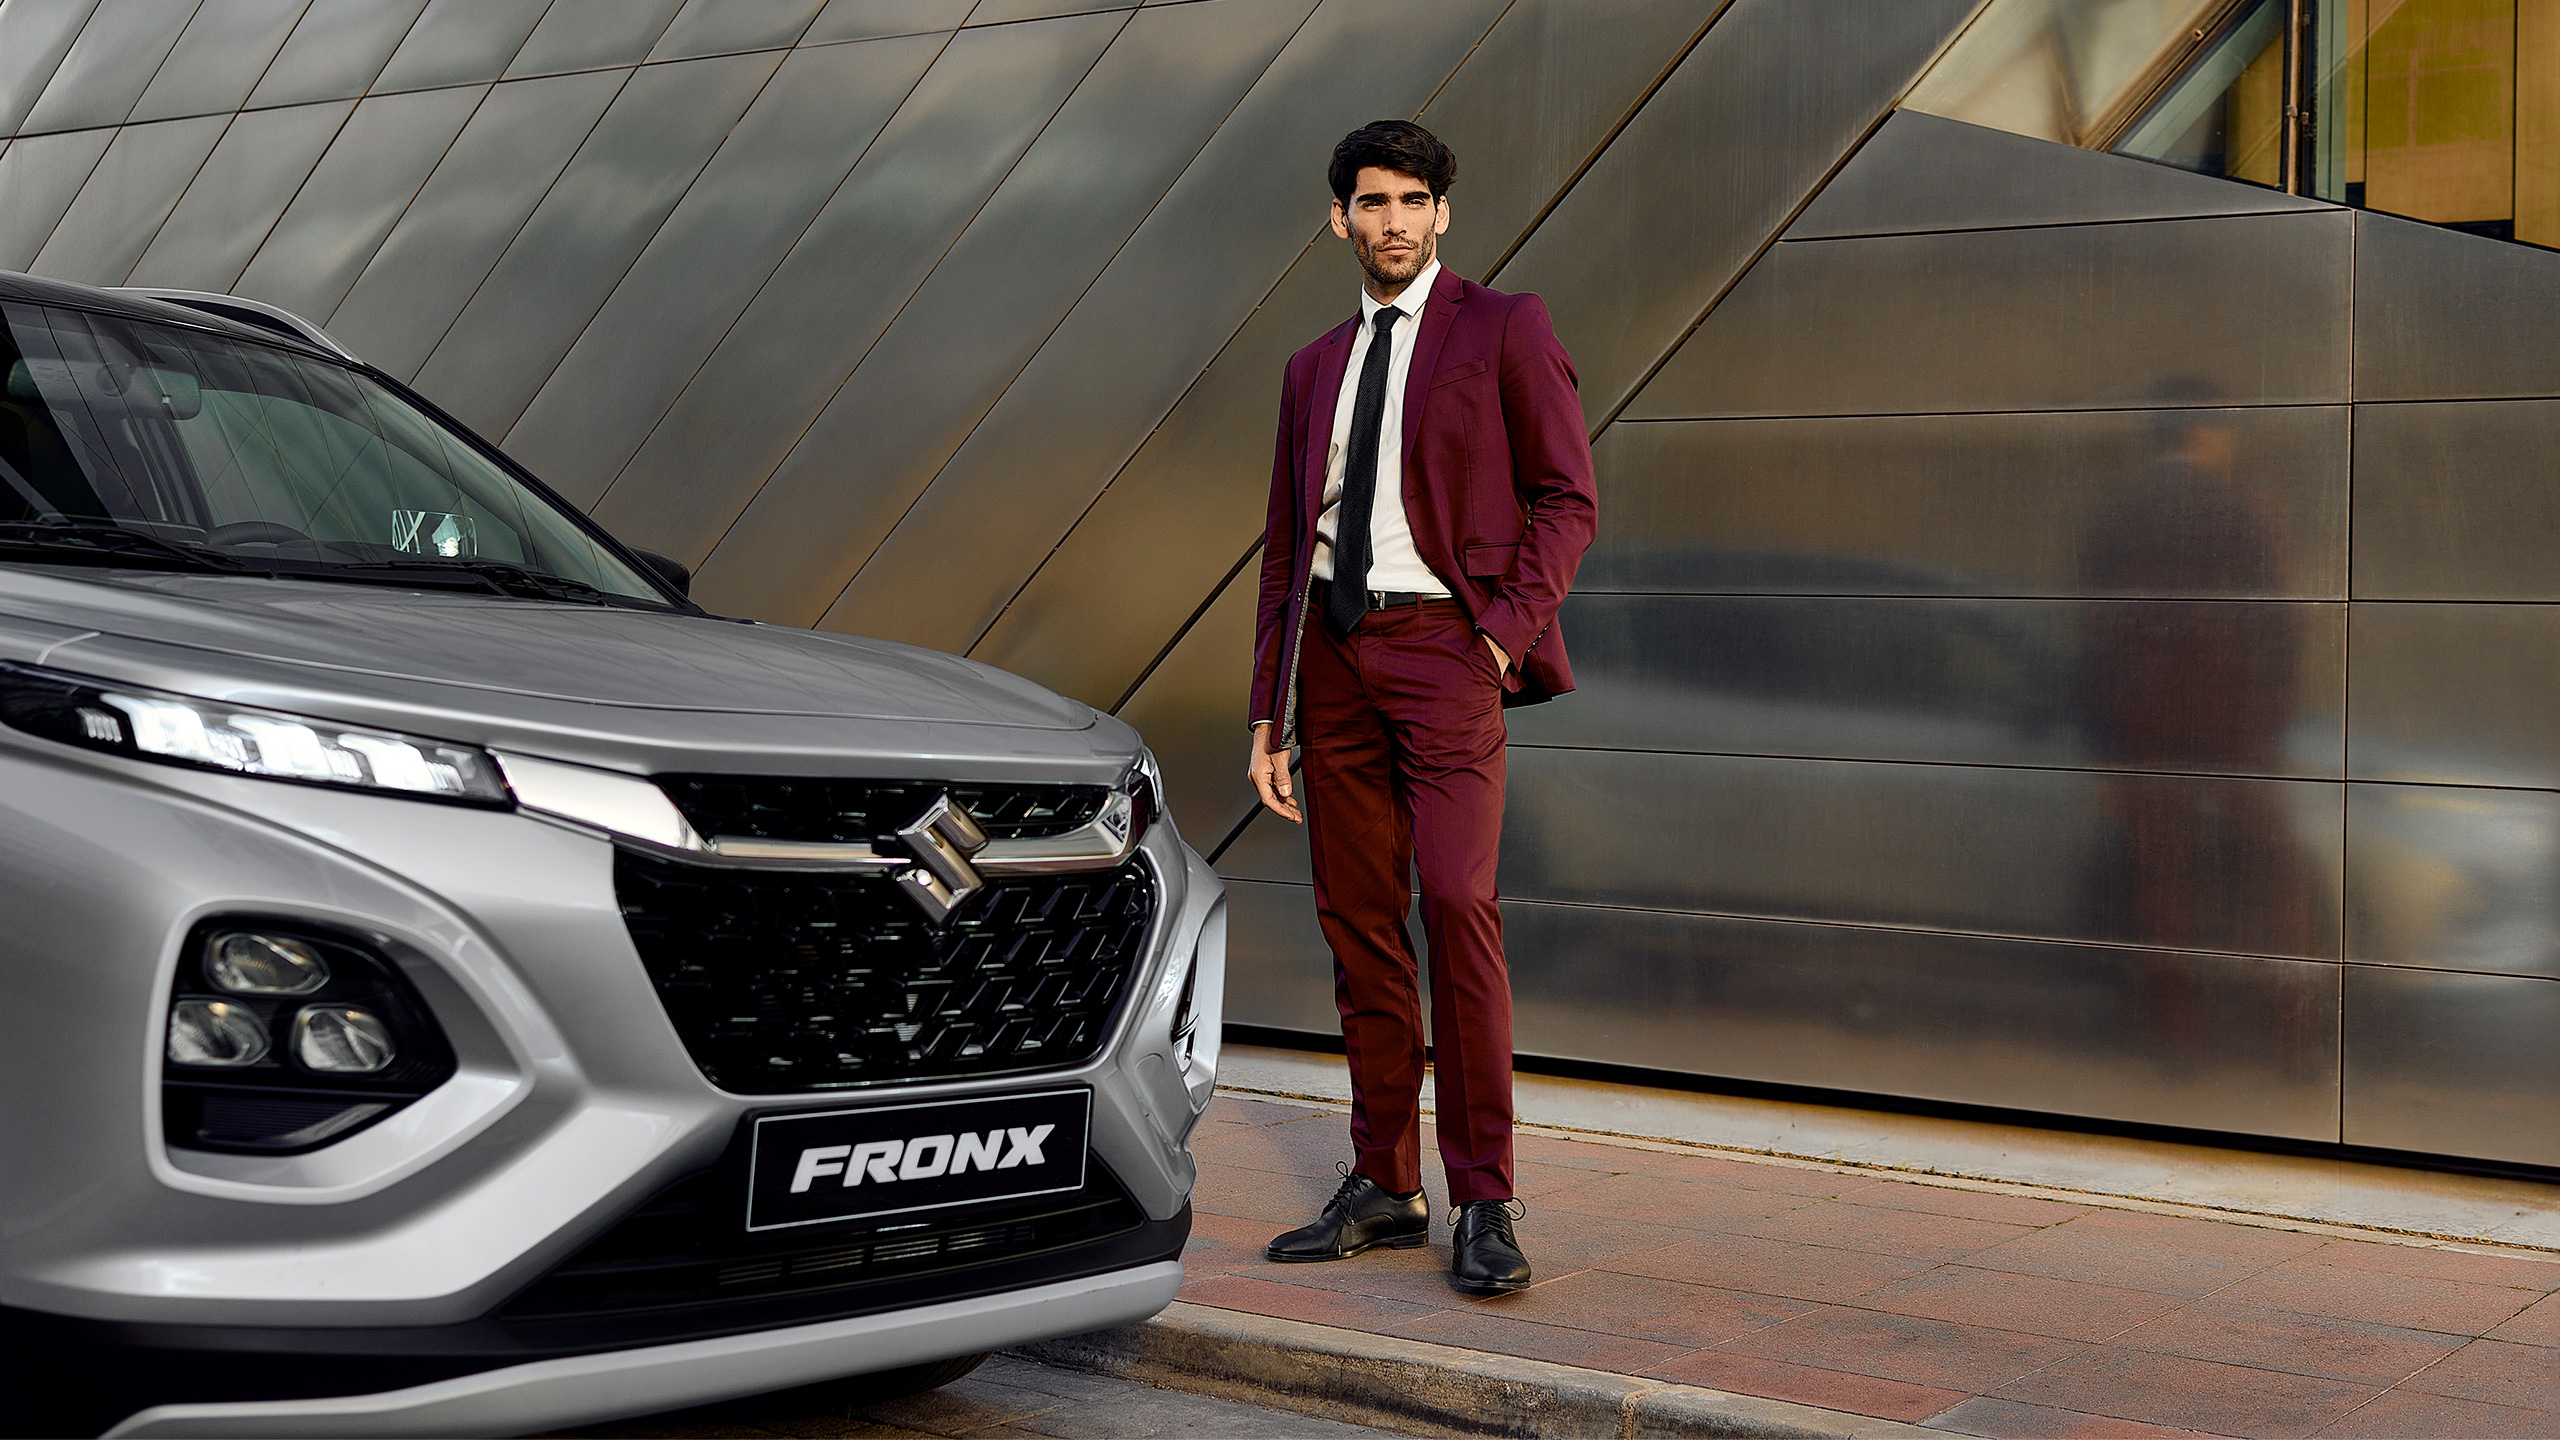 Suzuki-Fronx-male-standing-next-to-car